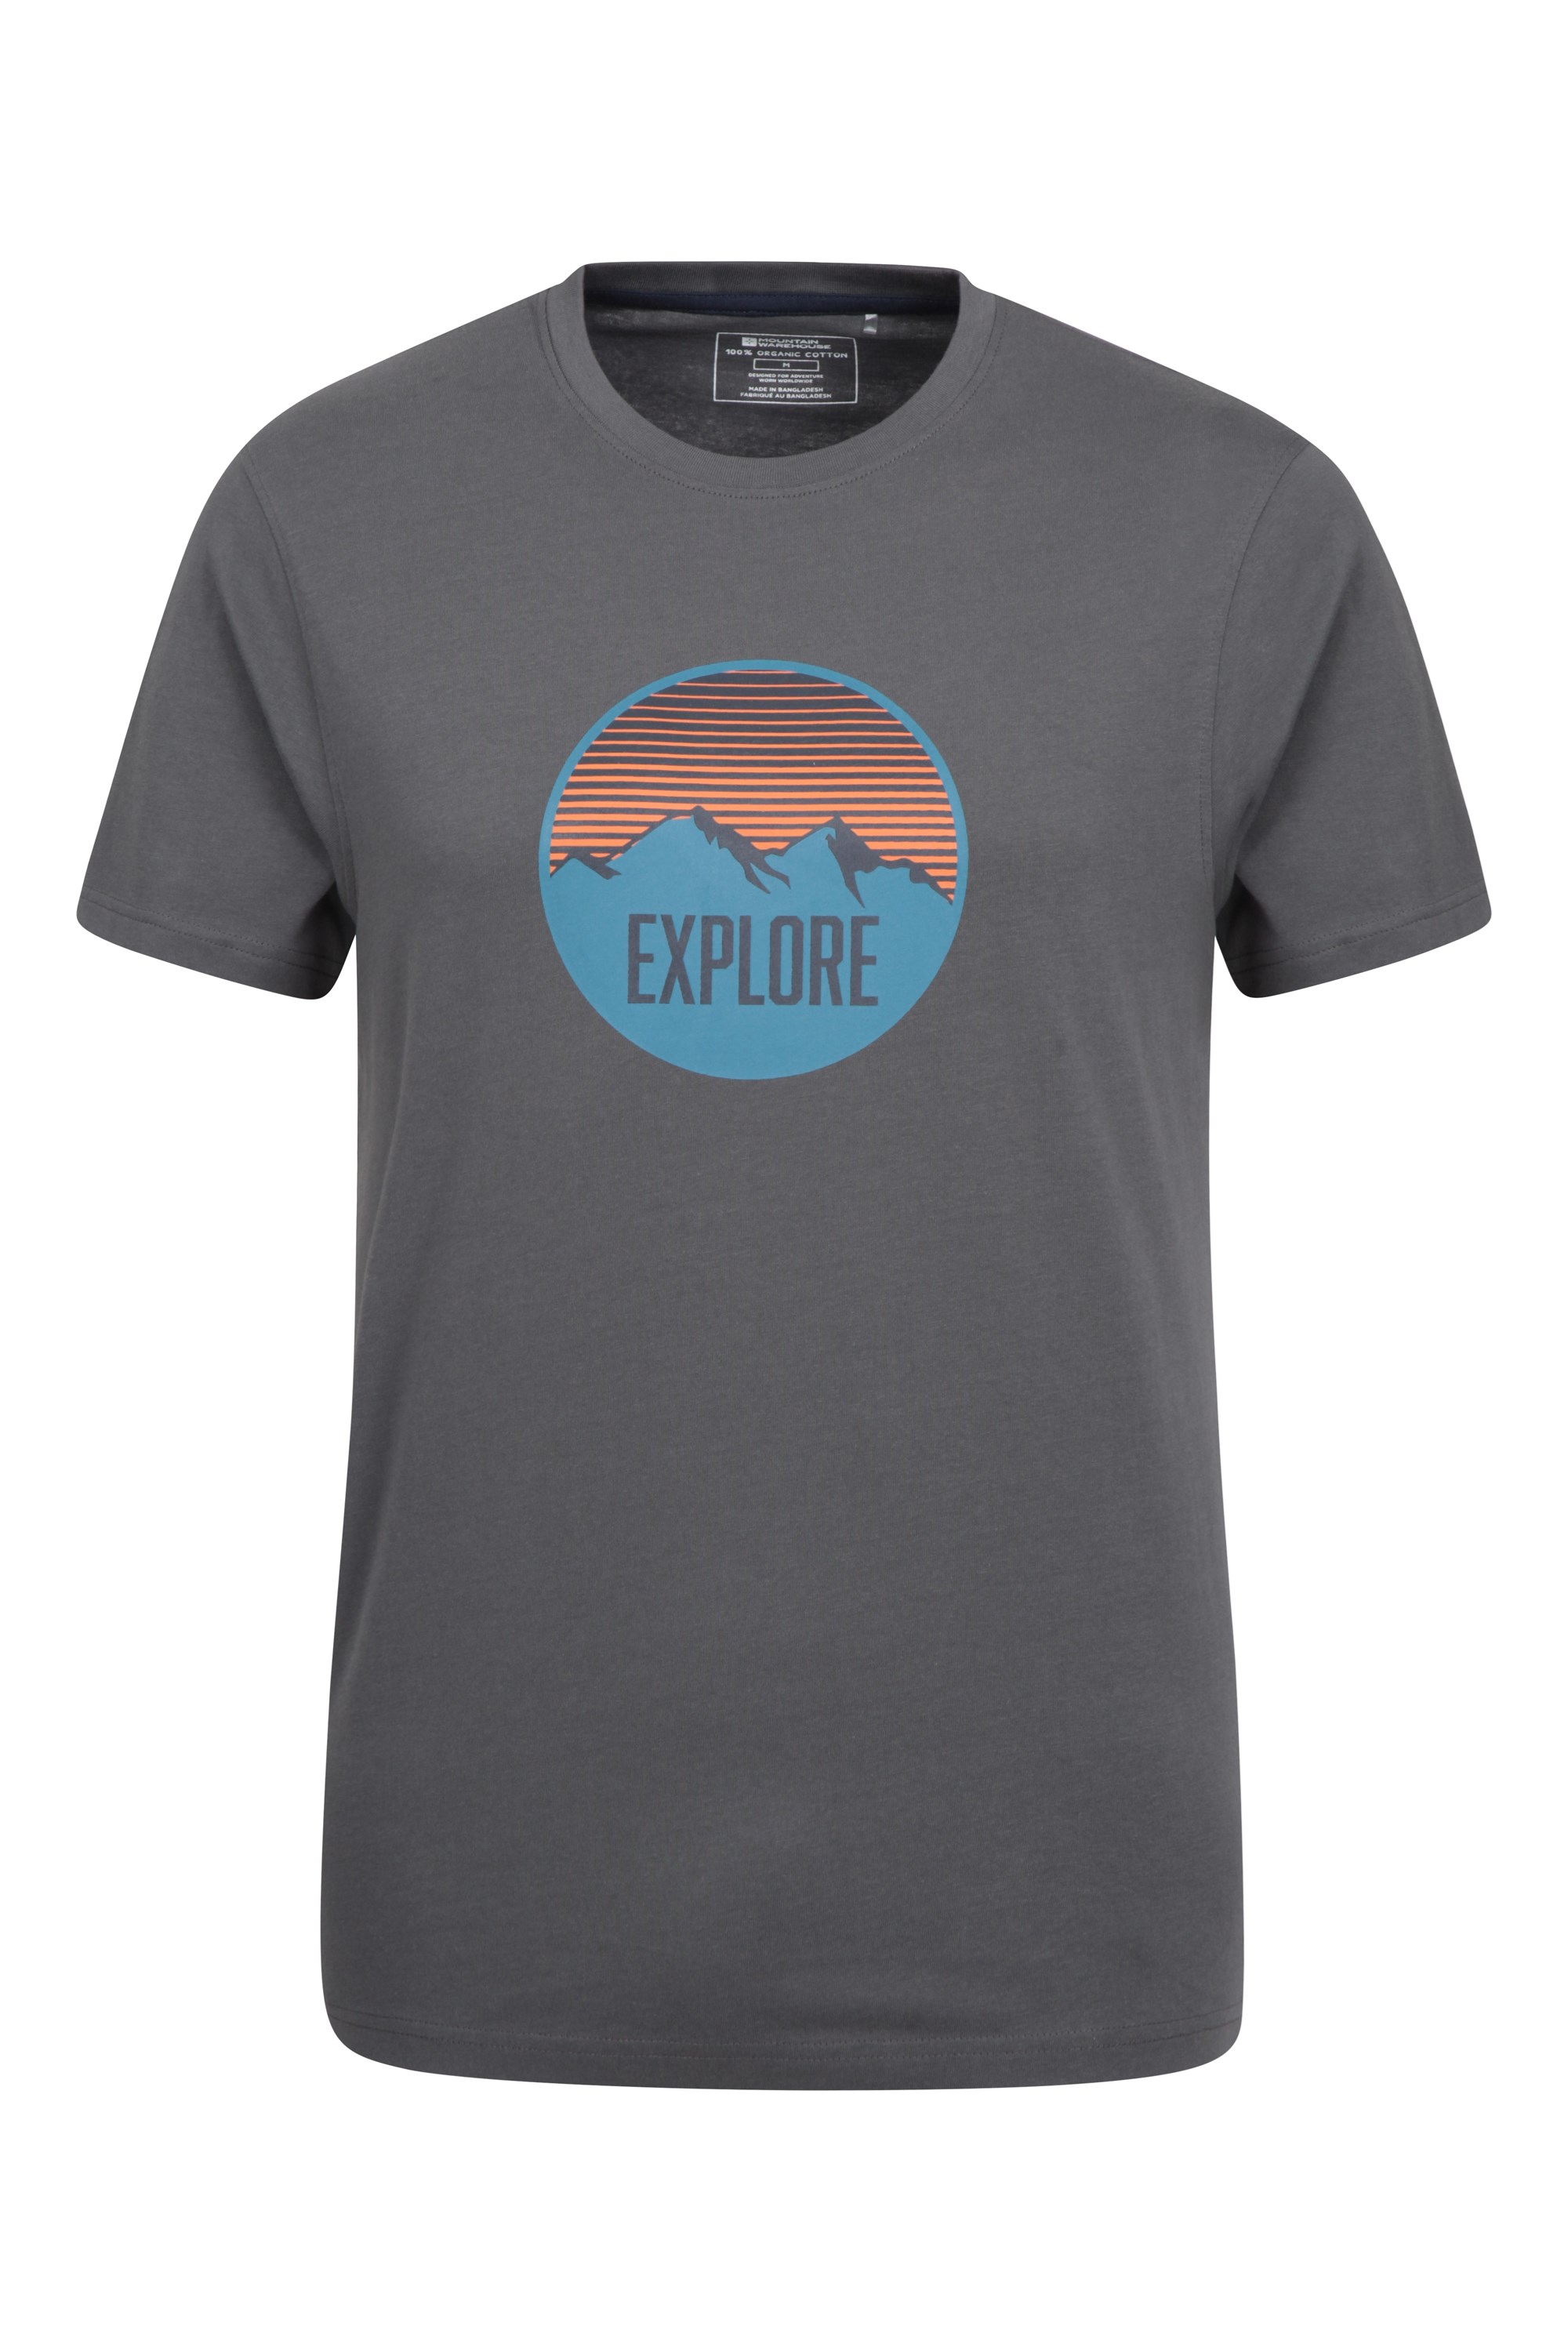 T-Shirt Explore Mountain Homme - Gris